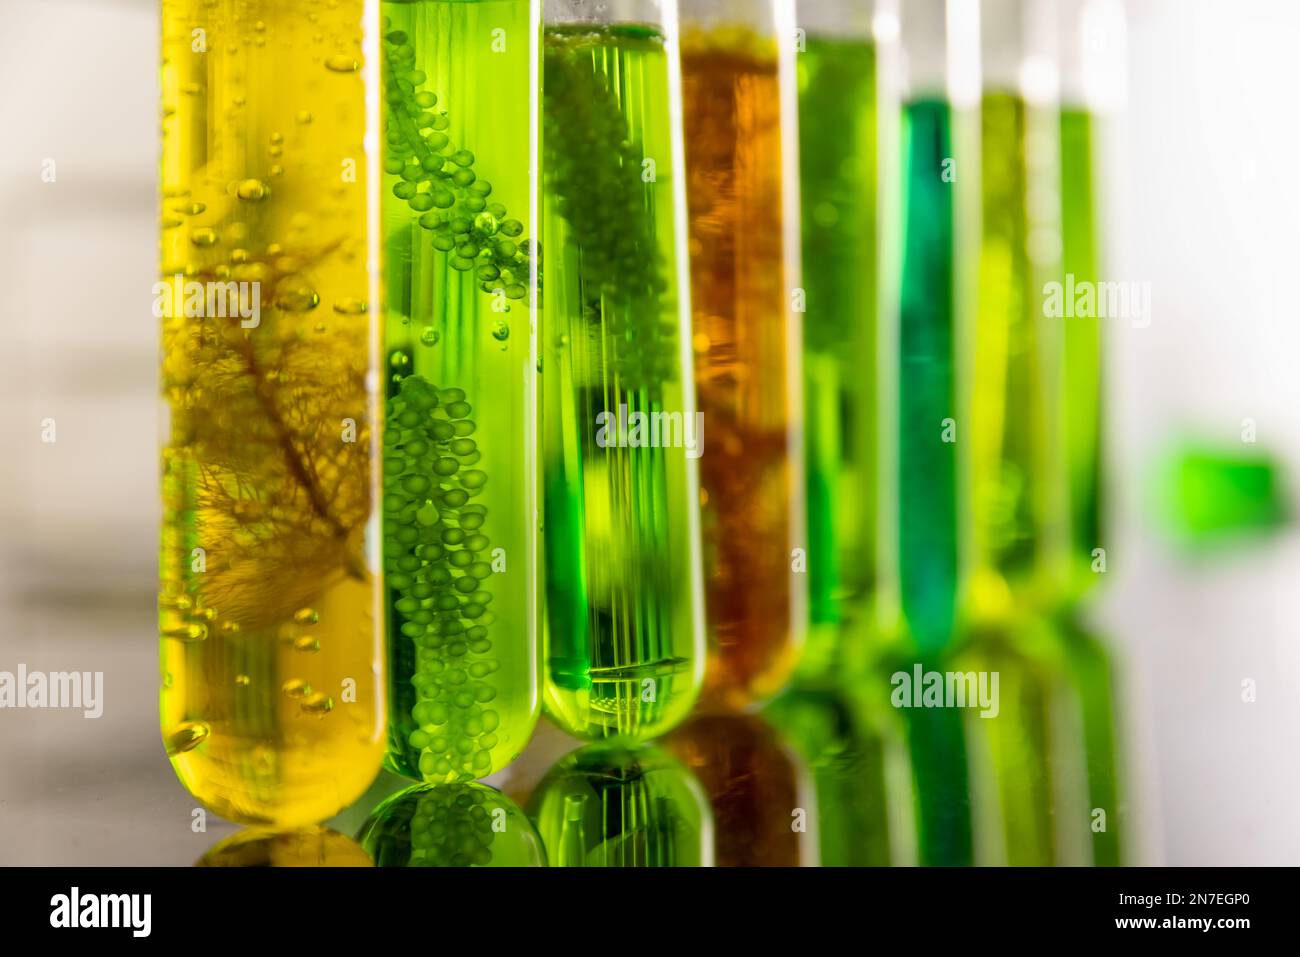 Biokraftstoff aus Algen hat einen niedrigen CO2-Fußabdruck. Stockfoto